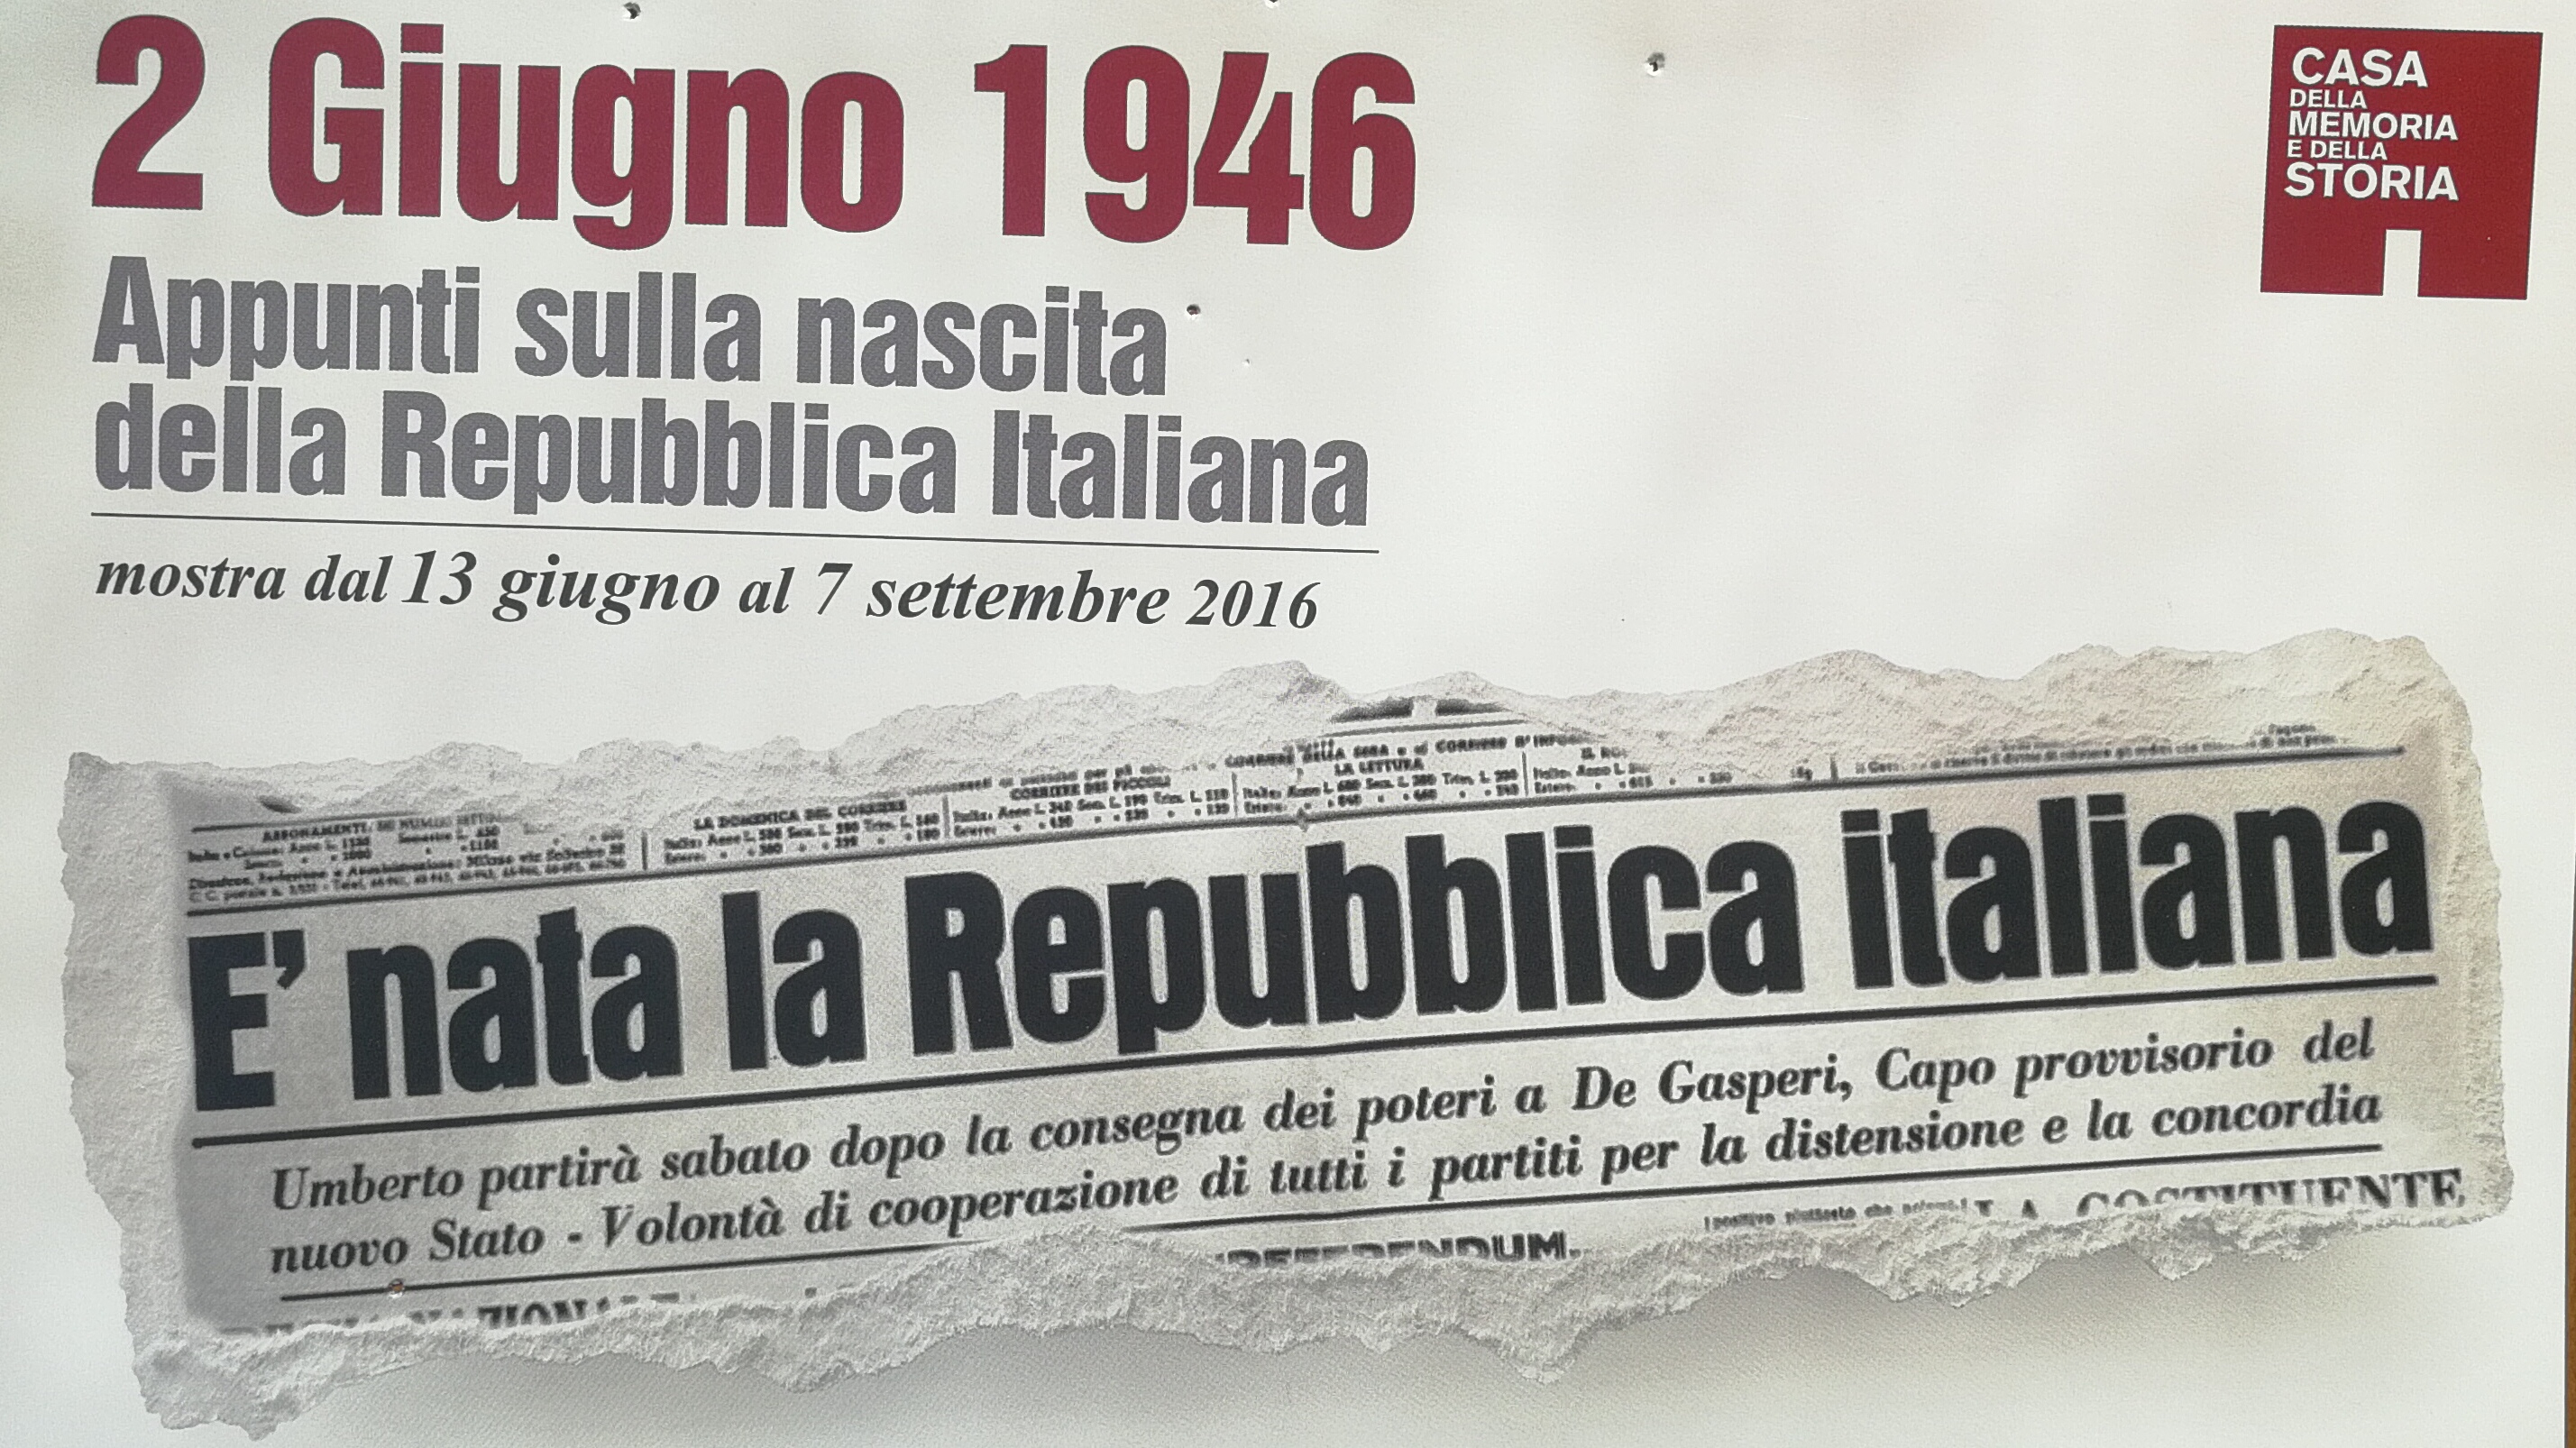 2 giugno 1946. Appunti sulla nascita della Repubblica Italiana